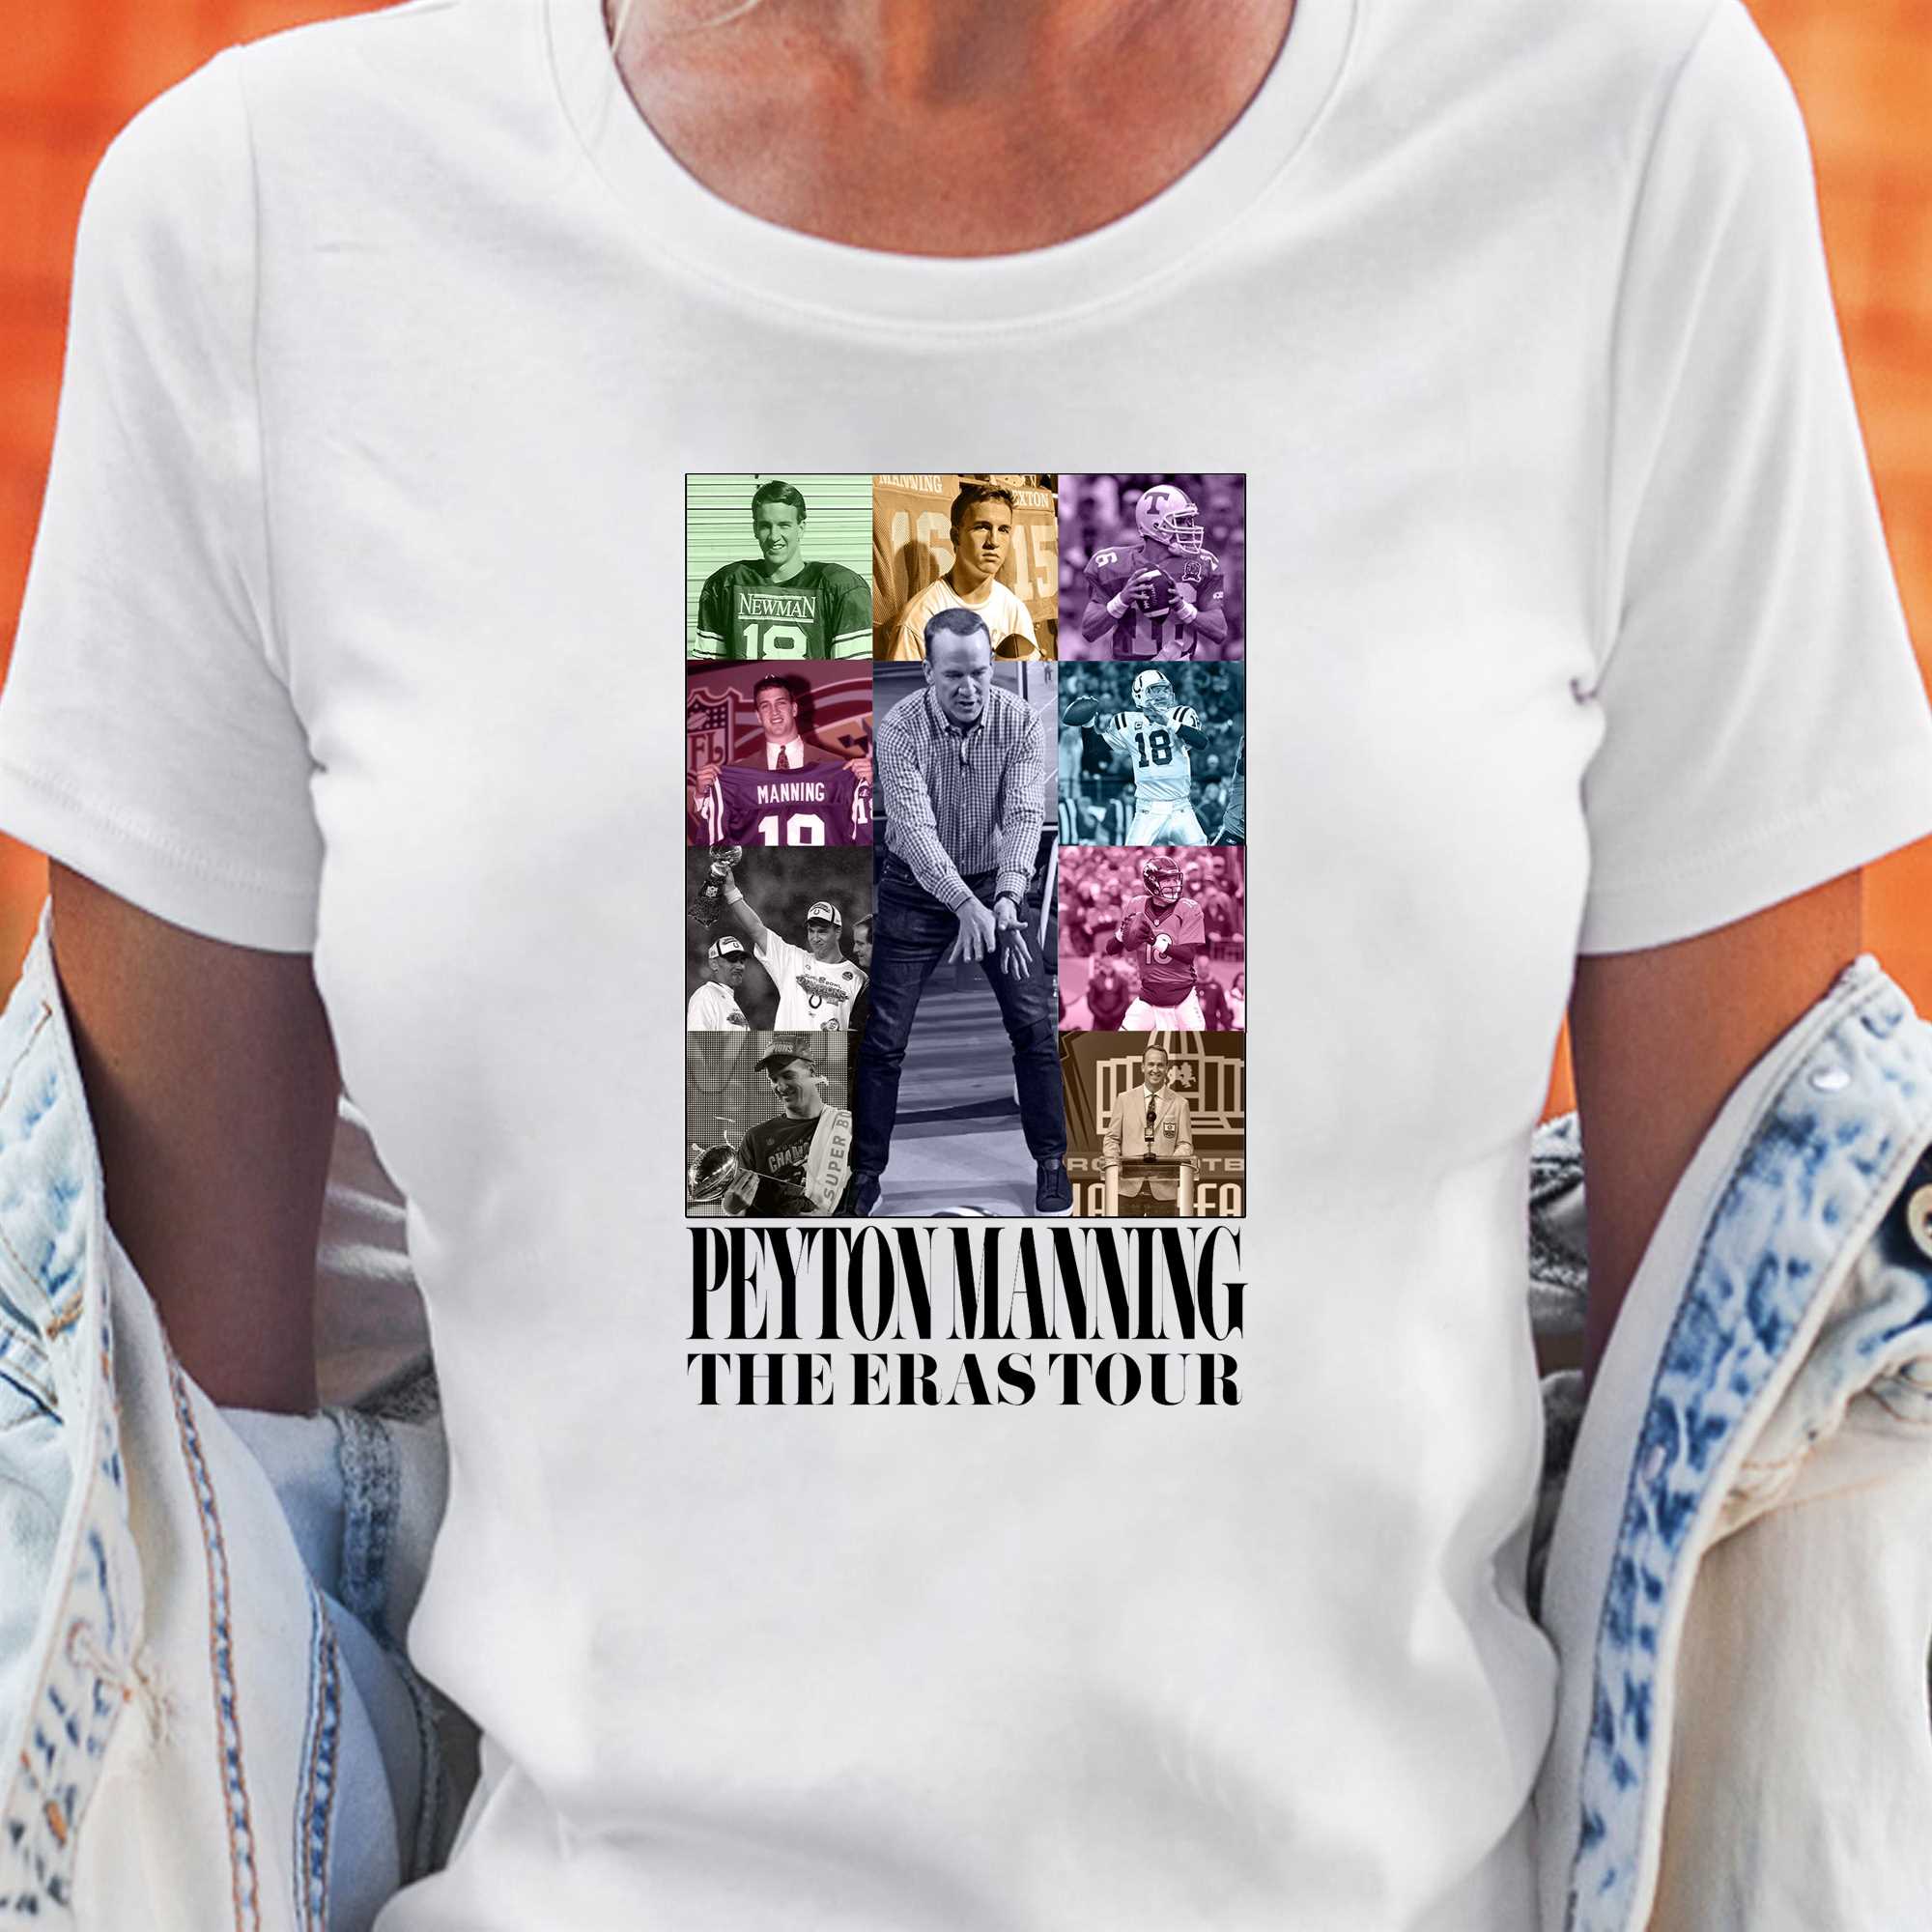 Peyton Manning Jerseys, Peyton Manning Shirts, Apparel, Gear